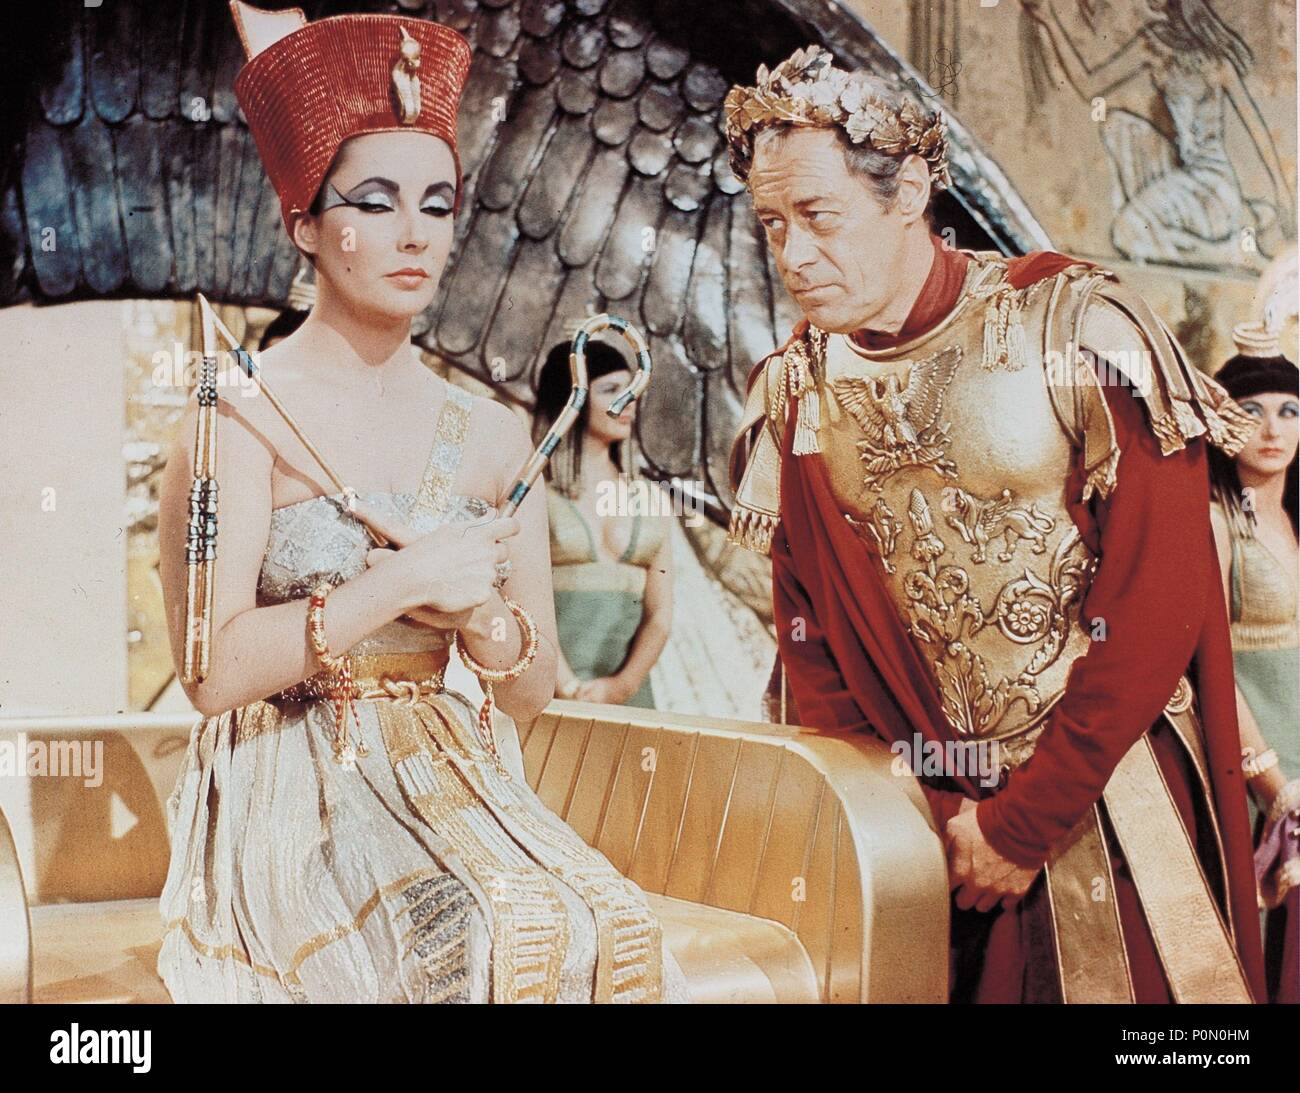 Original Film Title Cleopatra English Title Cleopatra Film Director Joseph L Mankiewicz Year 1963 Stars Gajus